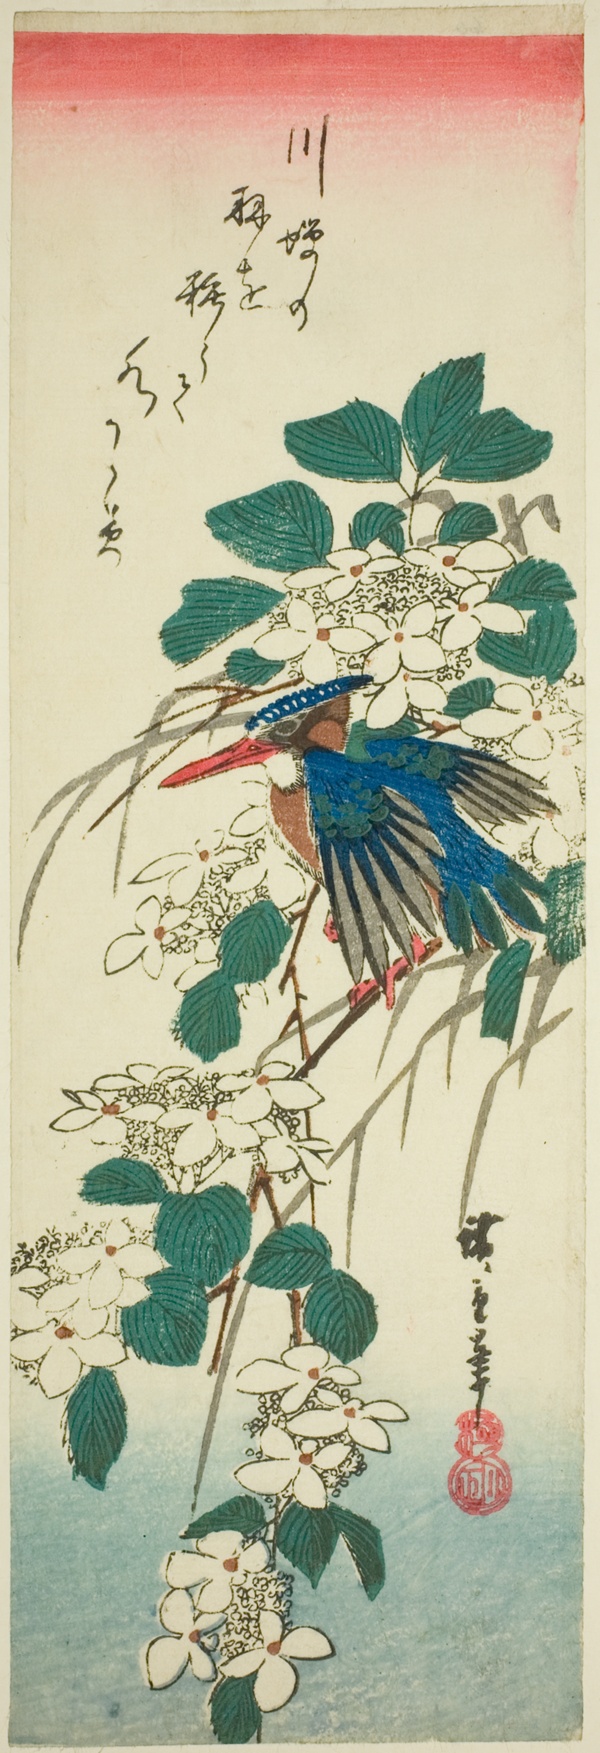 Kingfisher and viburnum